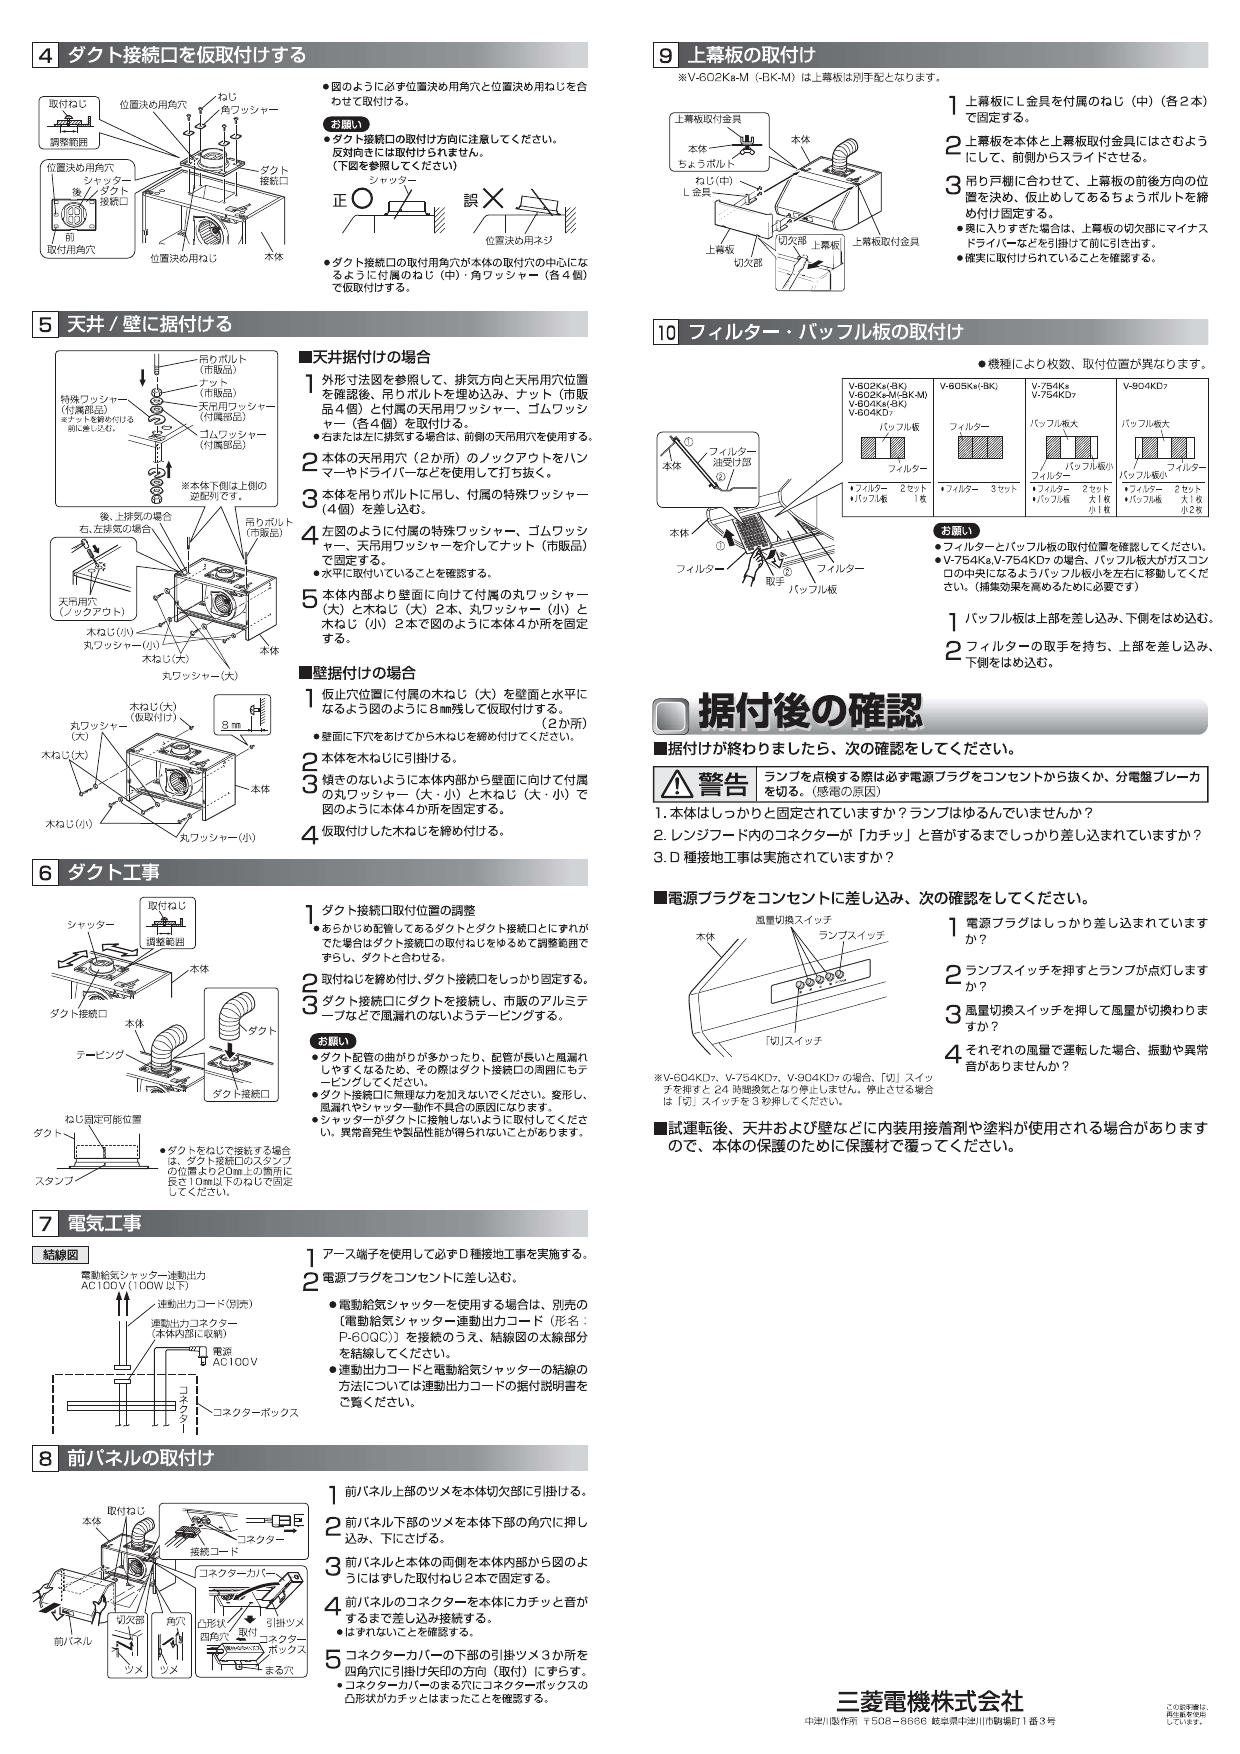 三菱電機 (MITSUBISHI) レンジフードファン ブース形 (深形)・BL認定品 V-604KL7-BL - 1